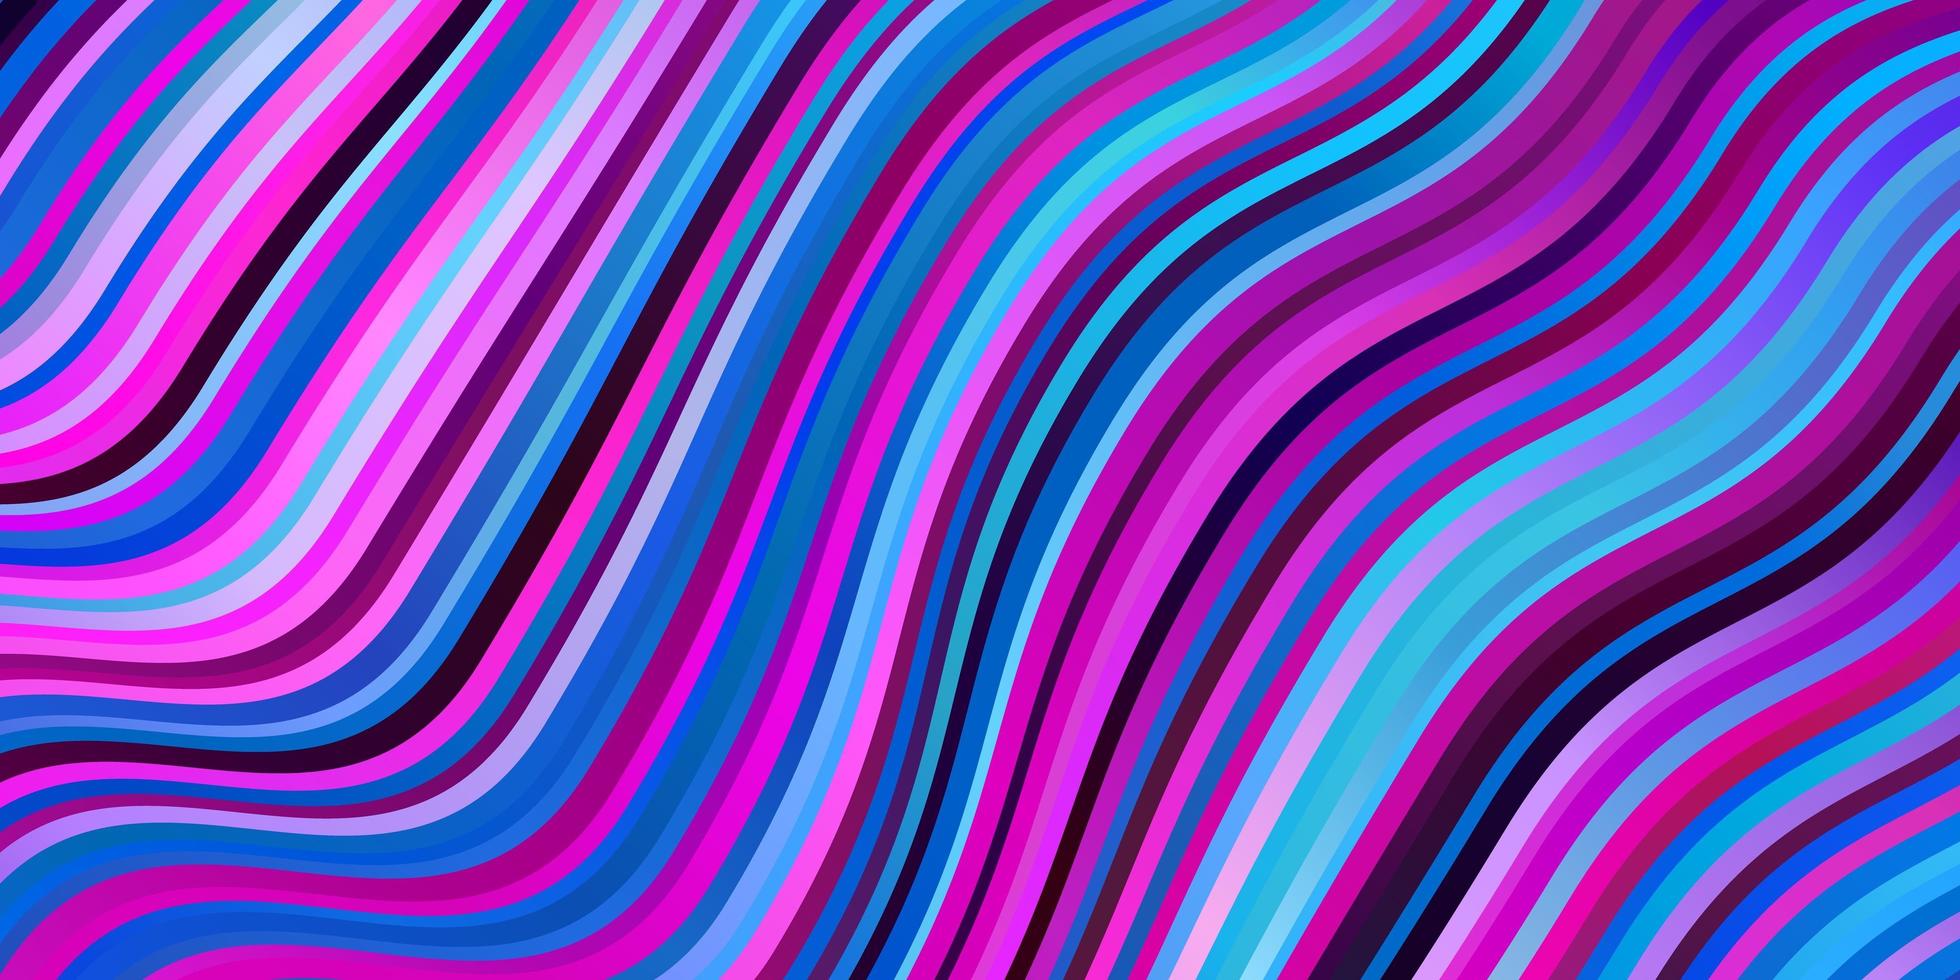 licht roze blauwe vector achtergrond met bogen kleurrijke abstracte illustratie met verloop curven patroon voor zakelijke boekjes folders